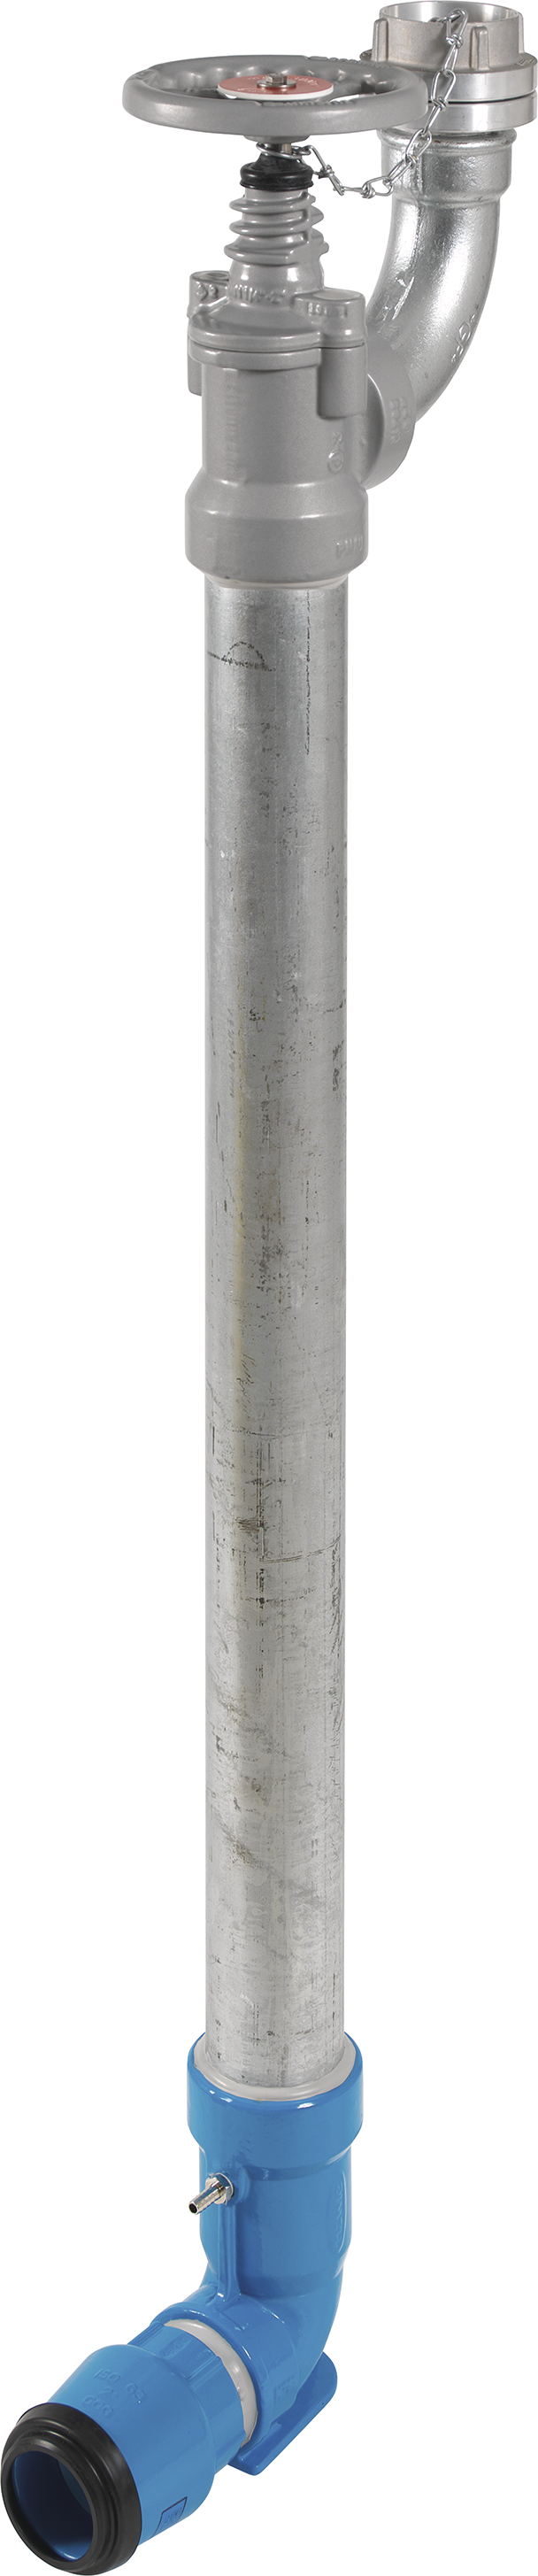 Bewässerungshydrant Unterflur N767 d 50mm, L = 1600mm - Hawle Hydranten